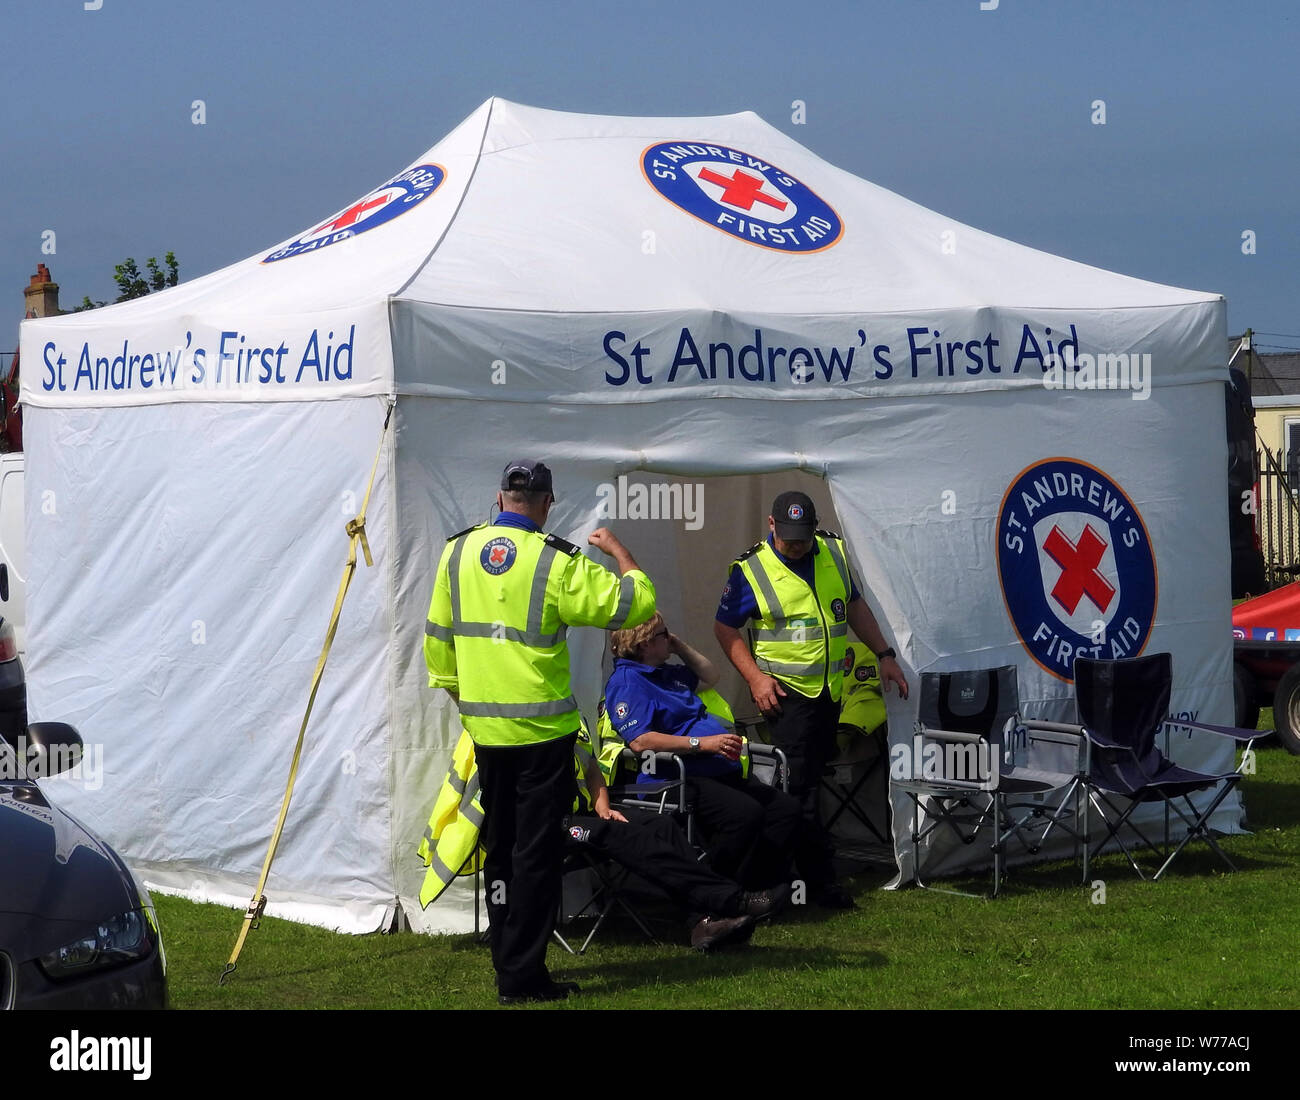 St. Andrews Erste-Hilfe Zelt. Stranraer, Schottland, jährliche zeigen, Juli 2019 Stockfoto